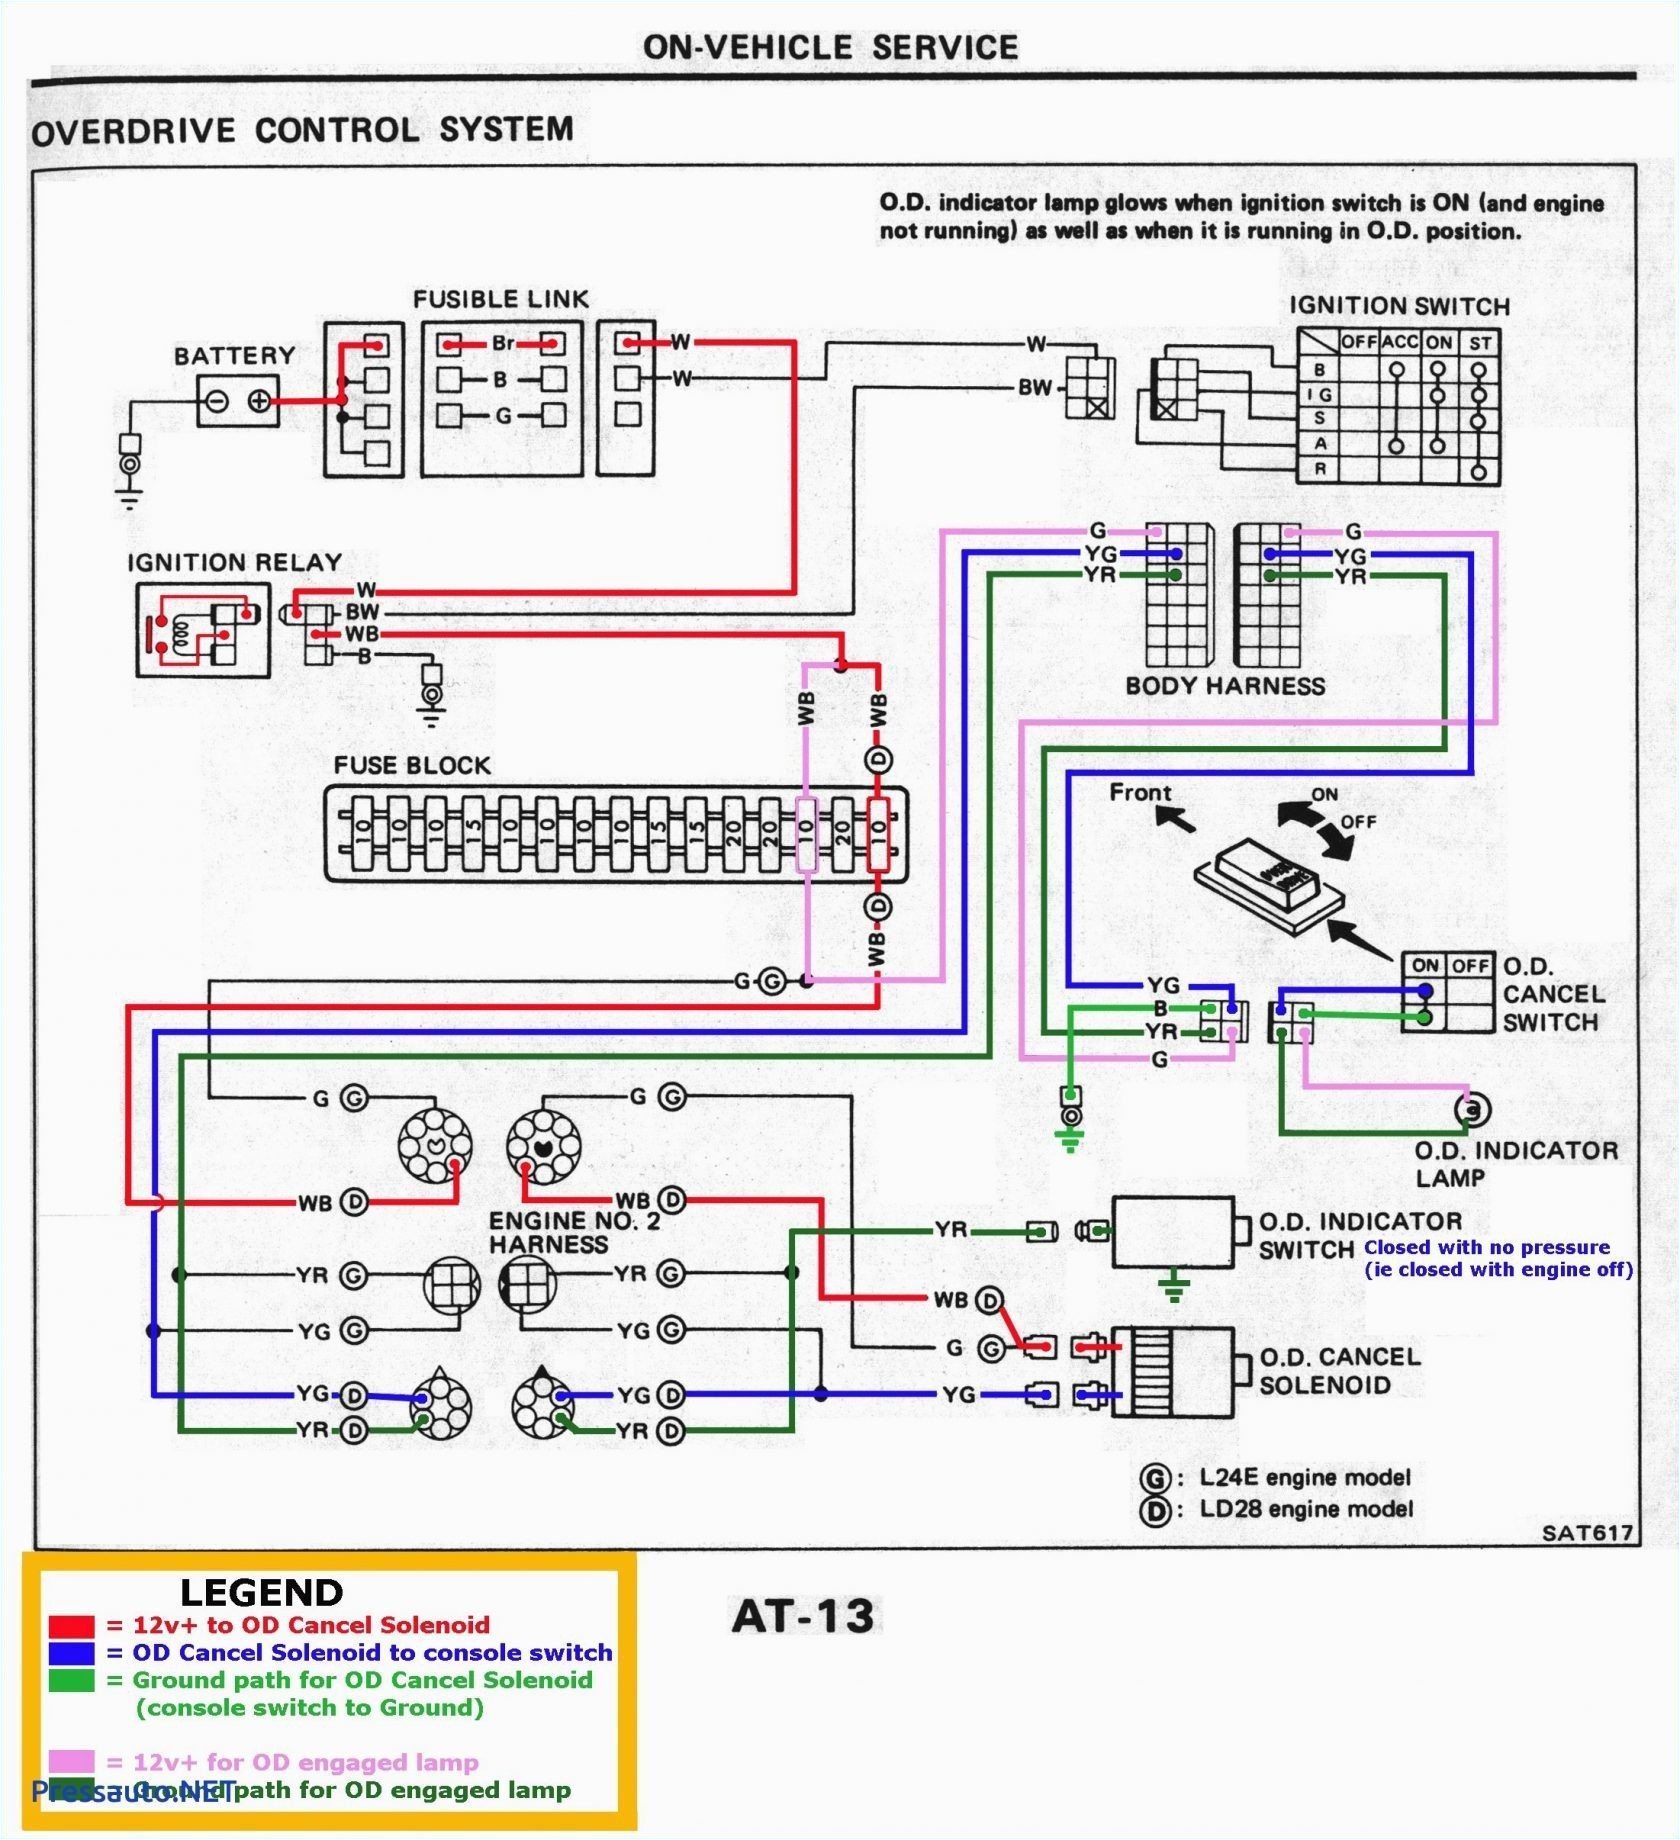 motorola alternator wiring diagram wiring diagram user motorola alternator wiring diagram